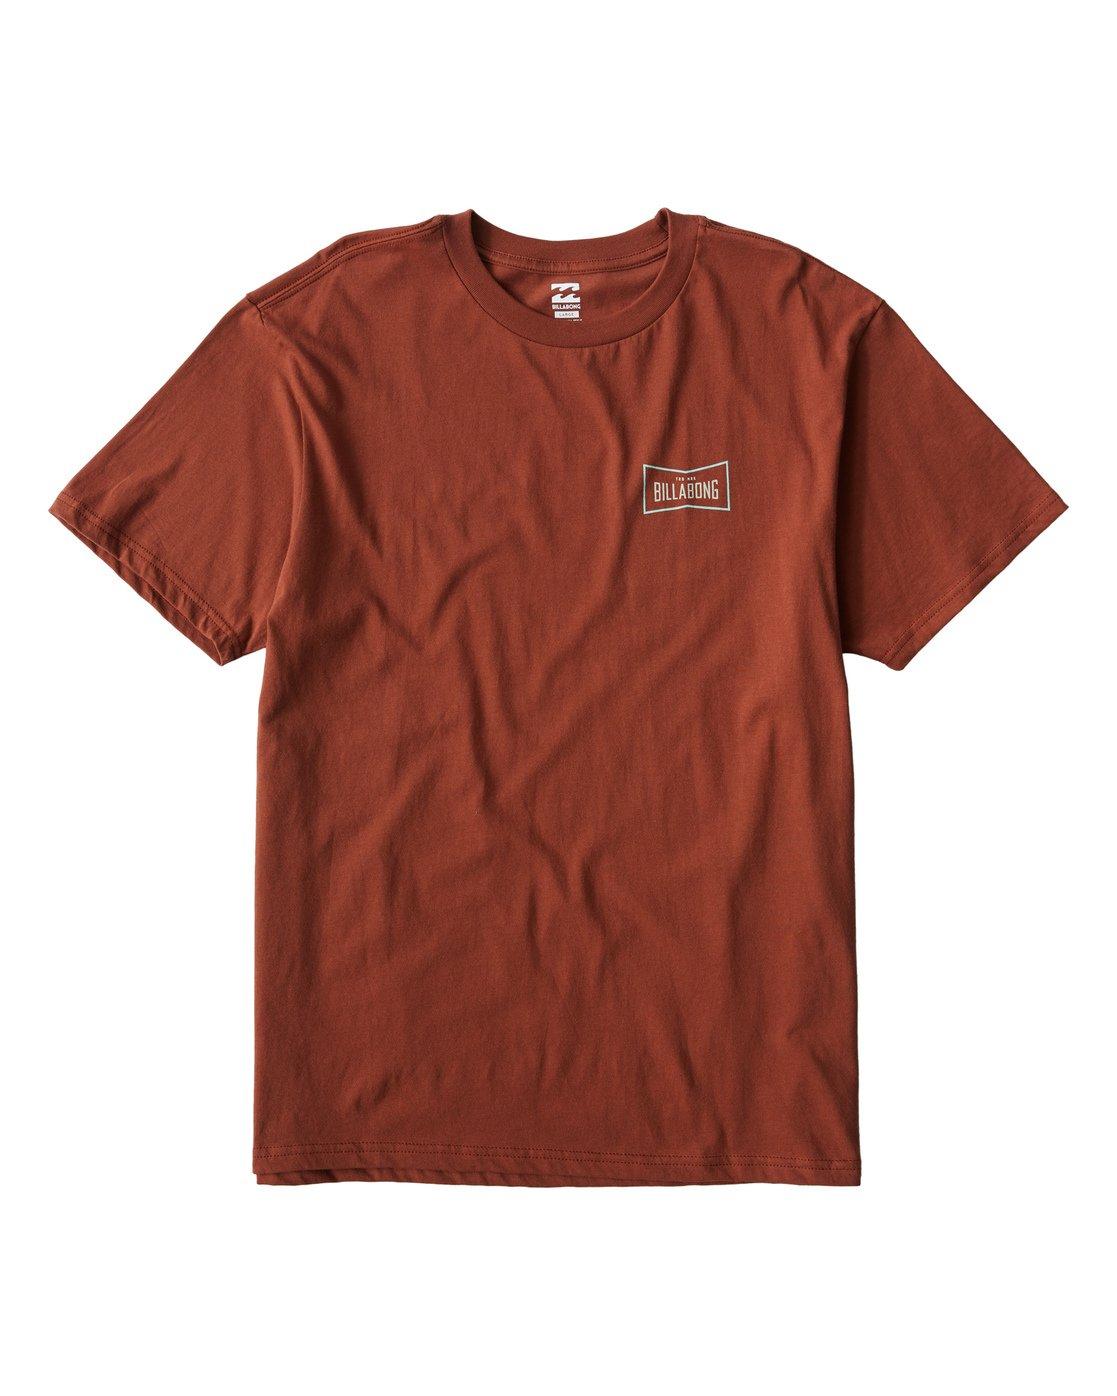 Billabong Cotton Original T-shirt for Men - Save 18% - Lyst